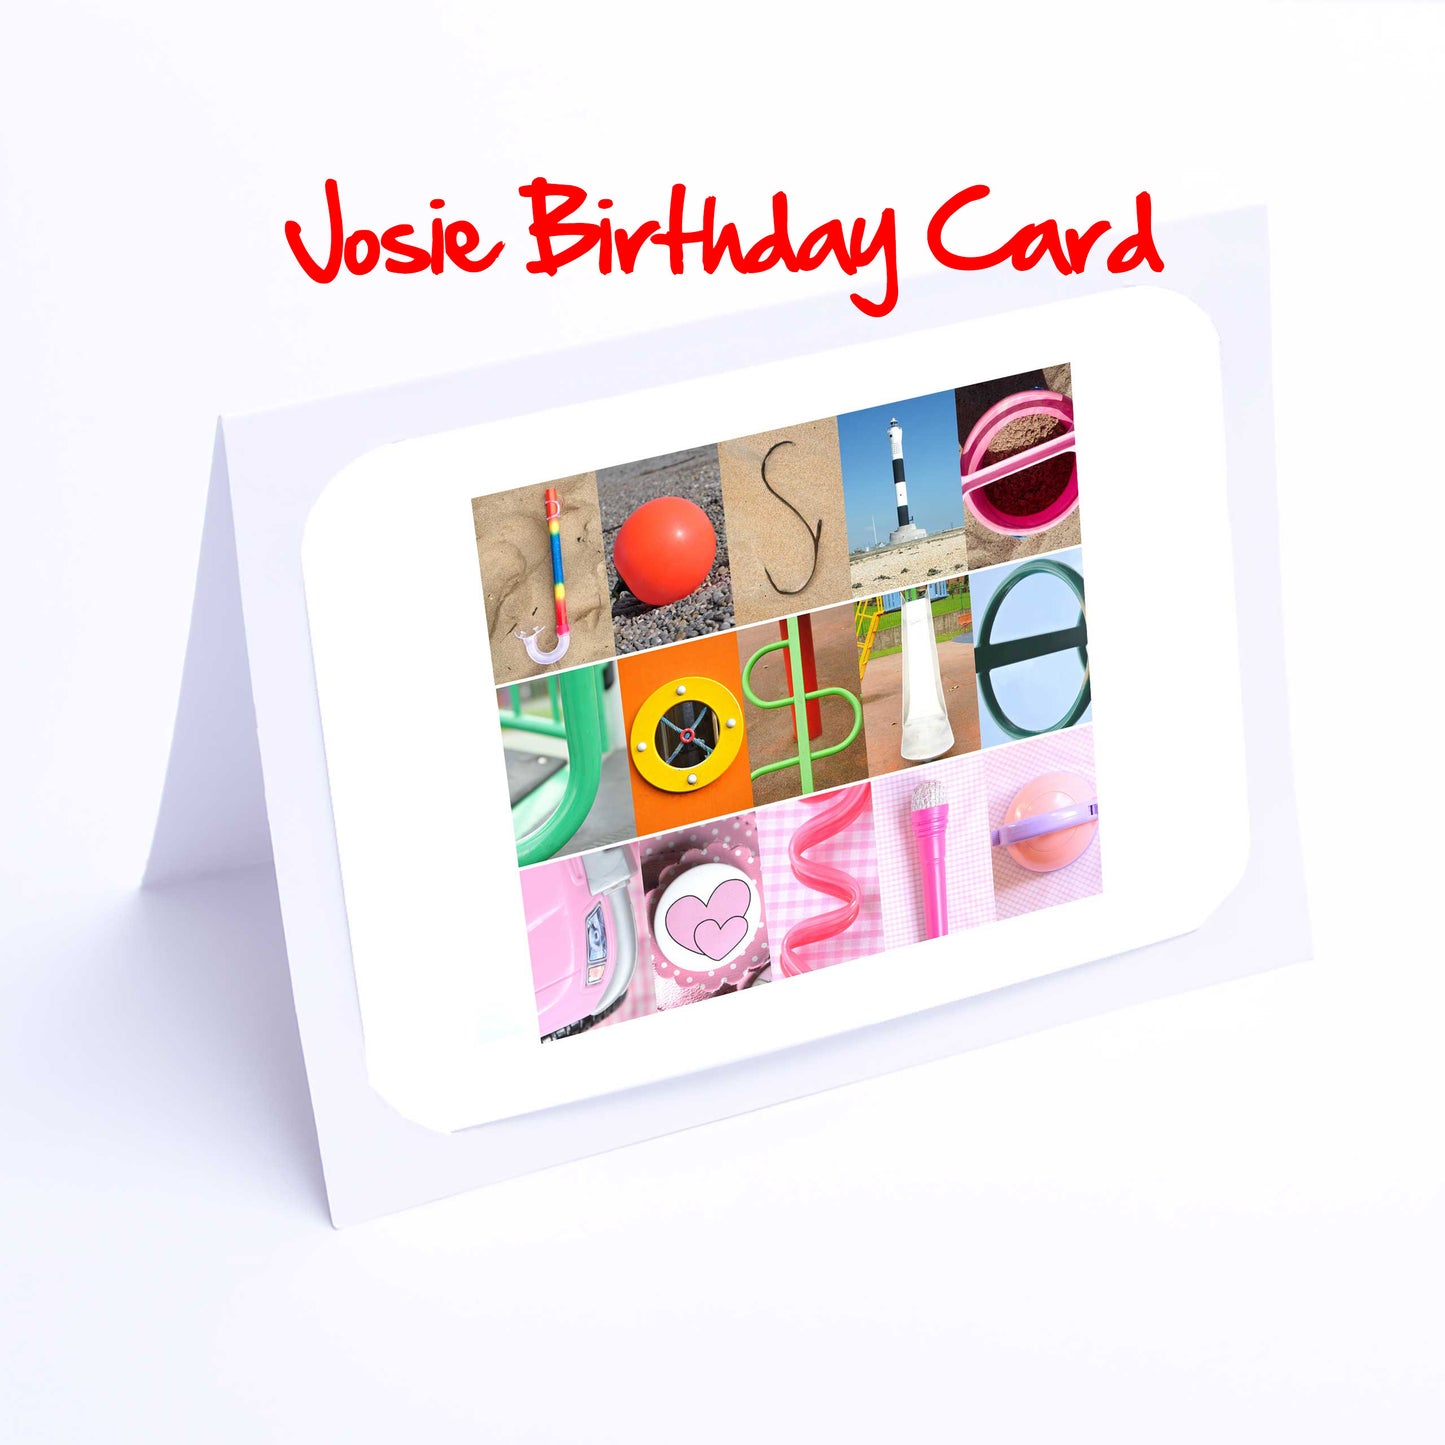 Joanne - Kaitlyn Girls Personalised Card - Joanna, Joanne, Jodie, Josephine, Josie, Juliet, Julia, Julie, Kaitlyn Any name - Girls Birthdays